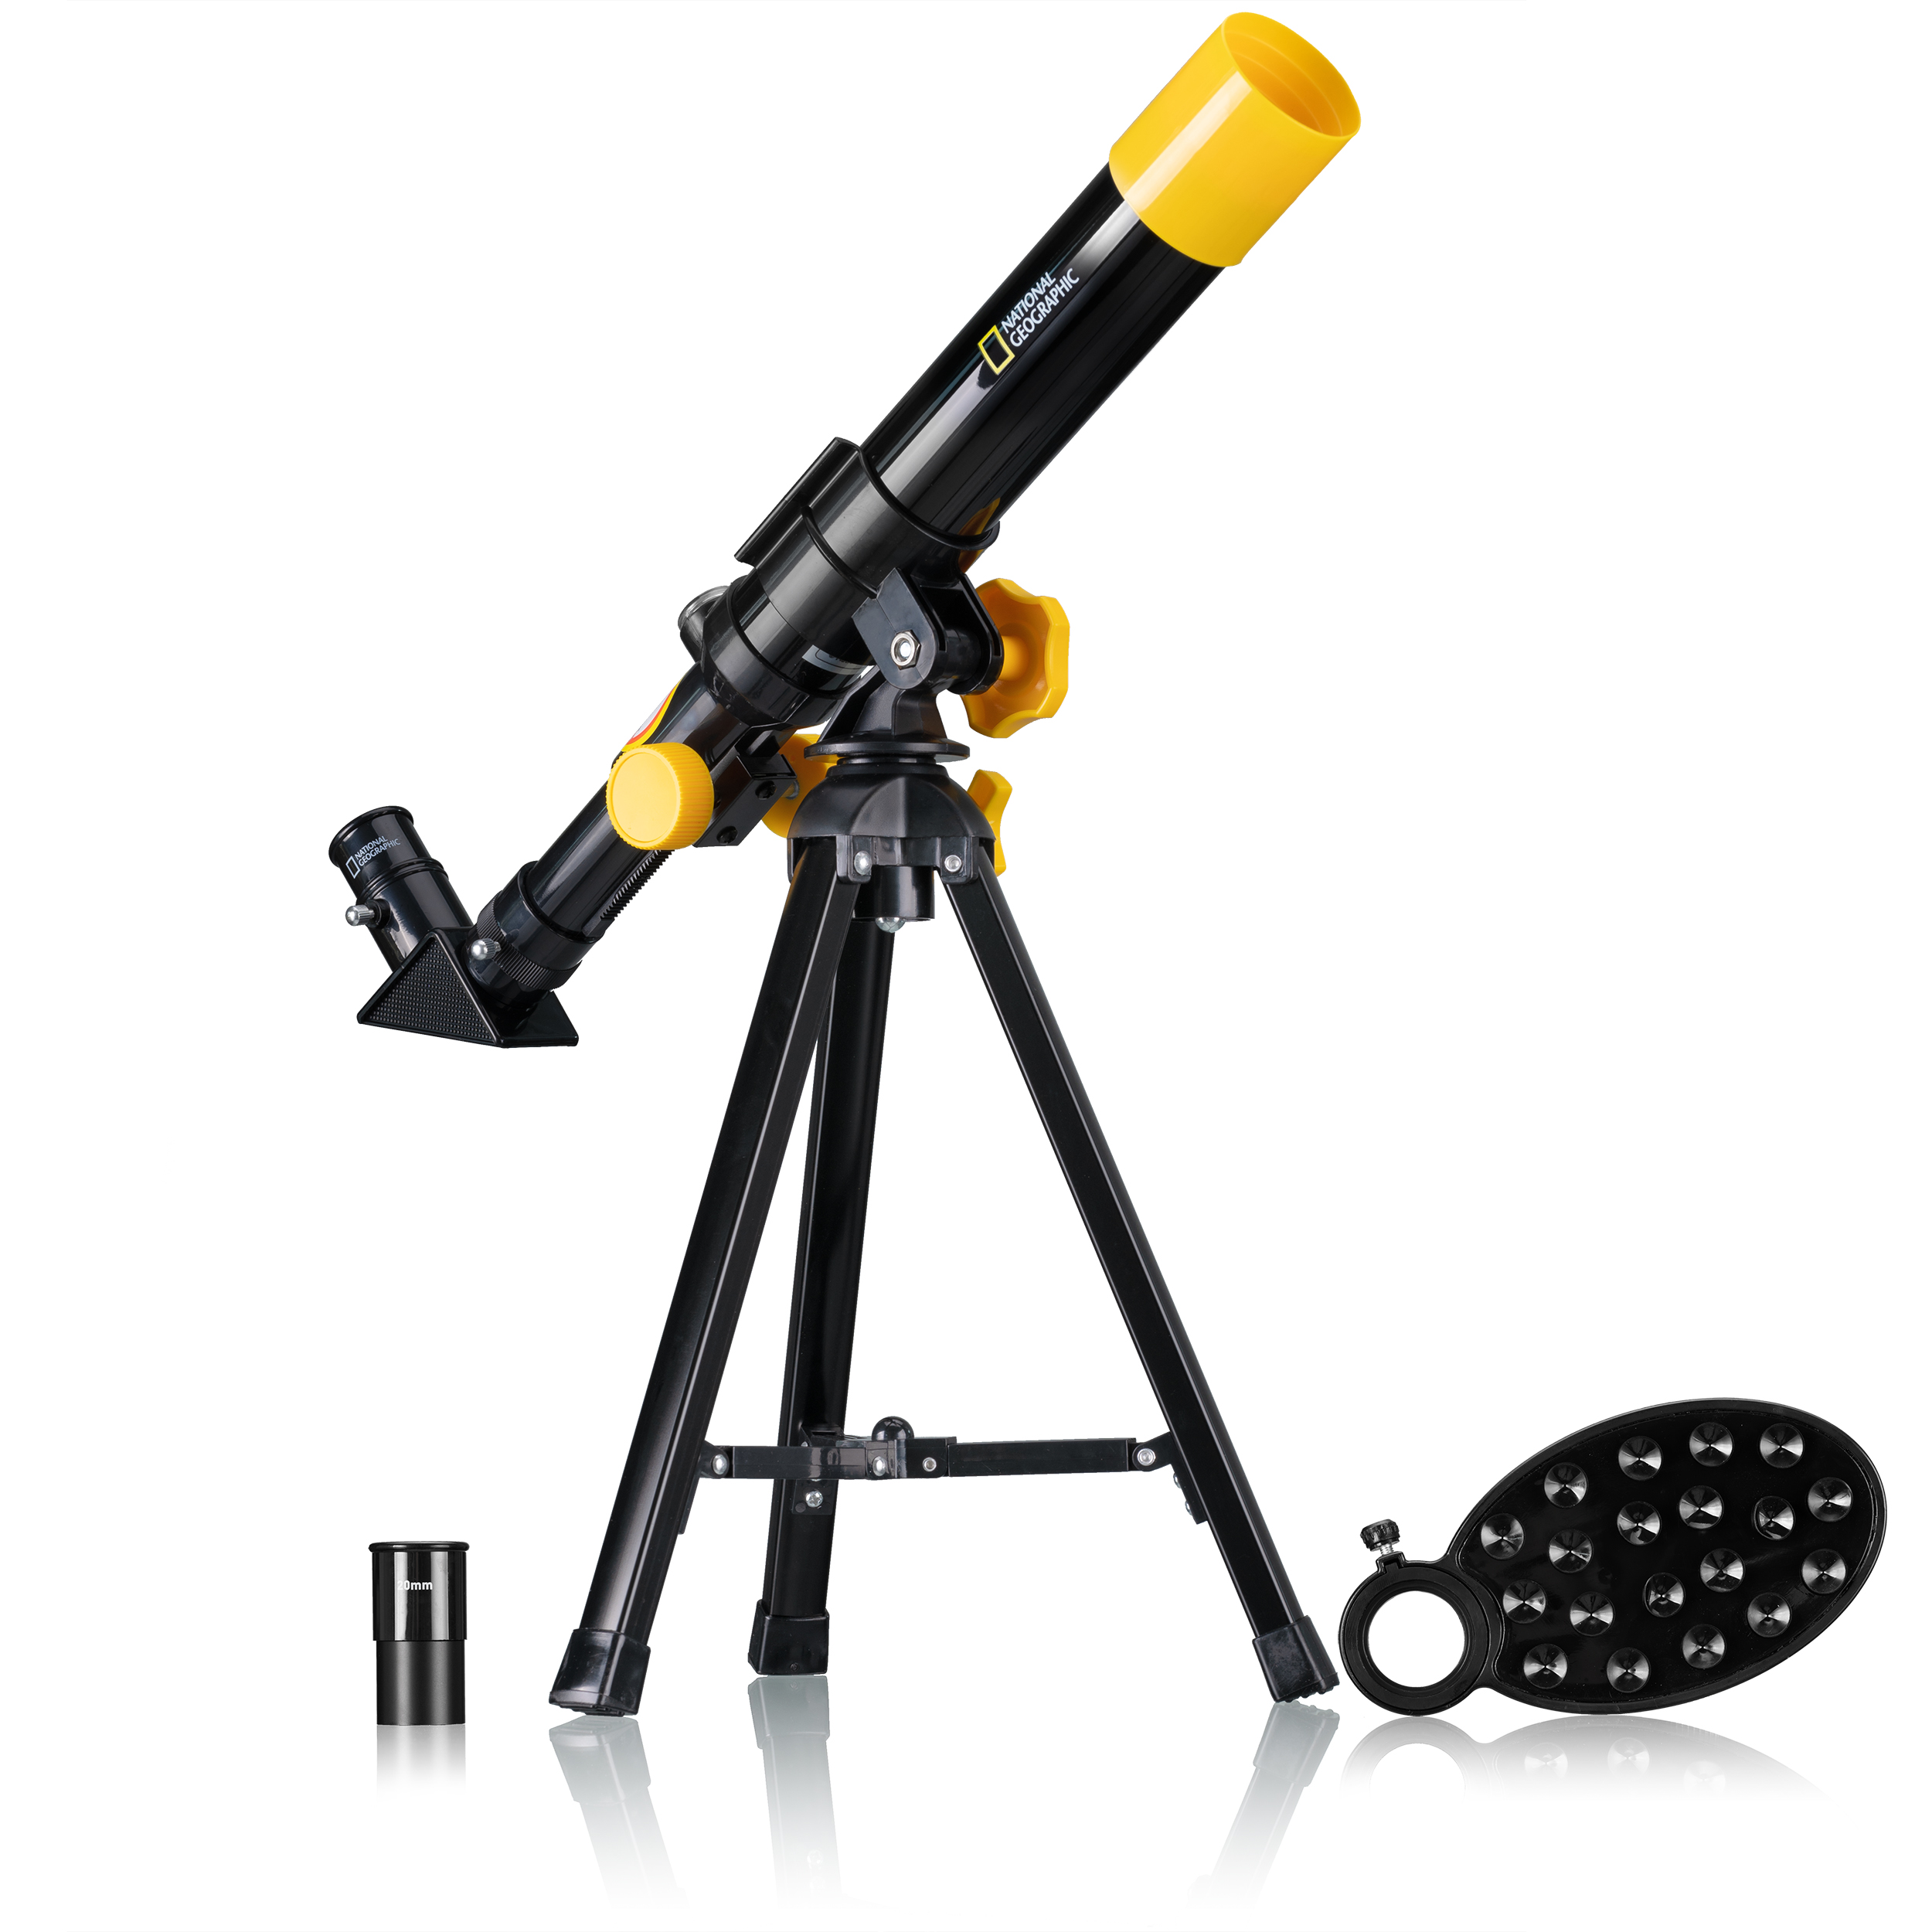 Компактный детский телескоп NATIONAL GEOGRAPHIC Bresser 40/400, 9140400 телескоп детский наша игрушка 60х увеличение 3 объектива арт 800664